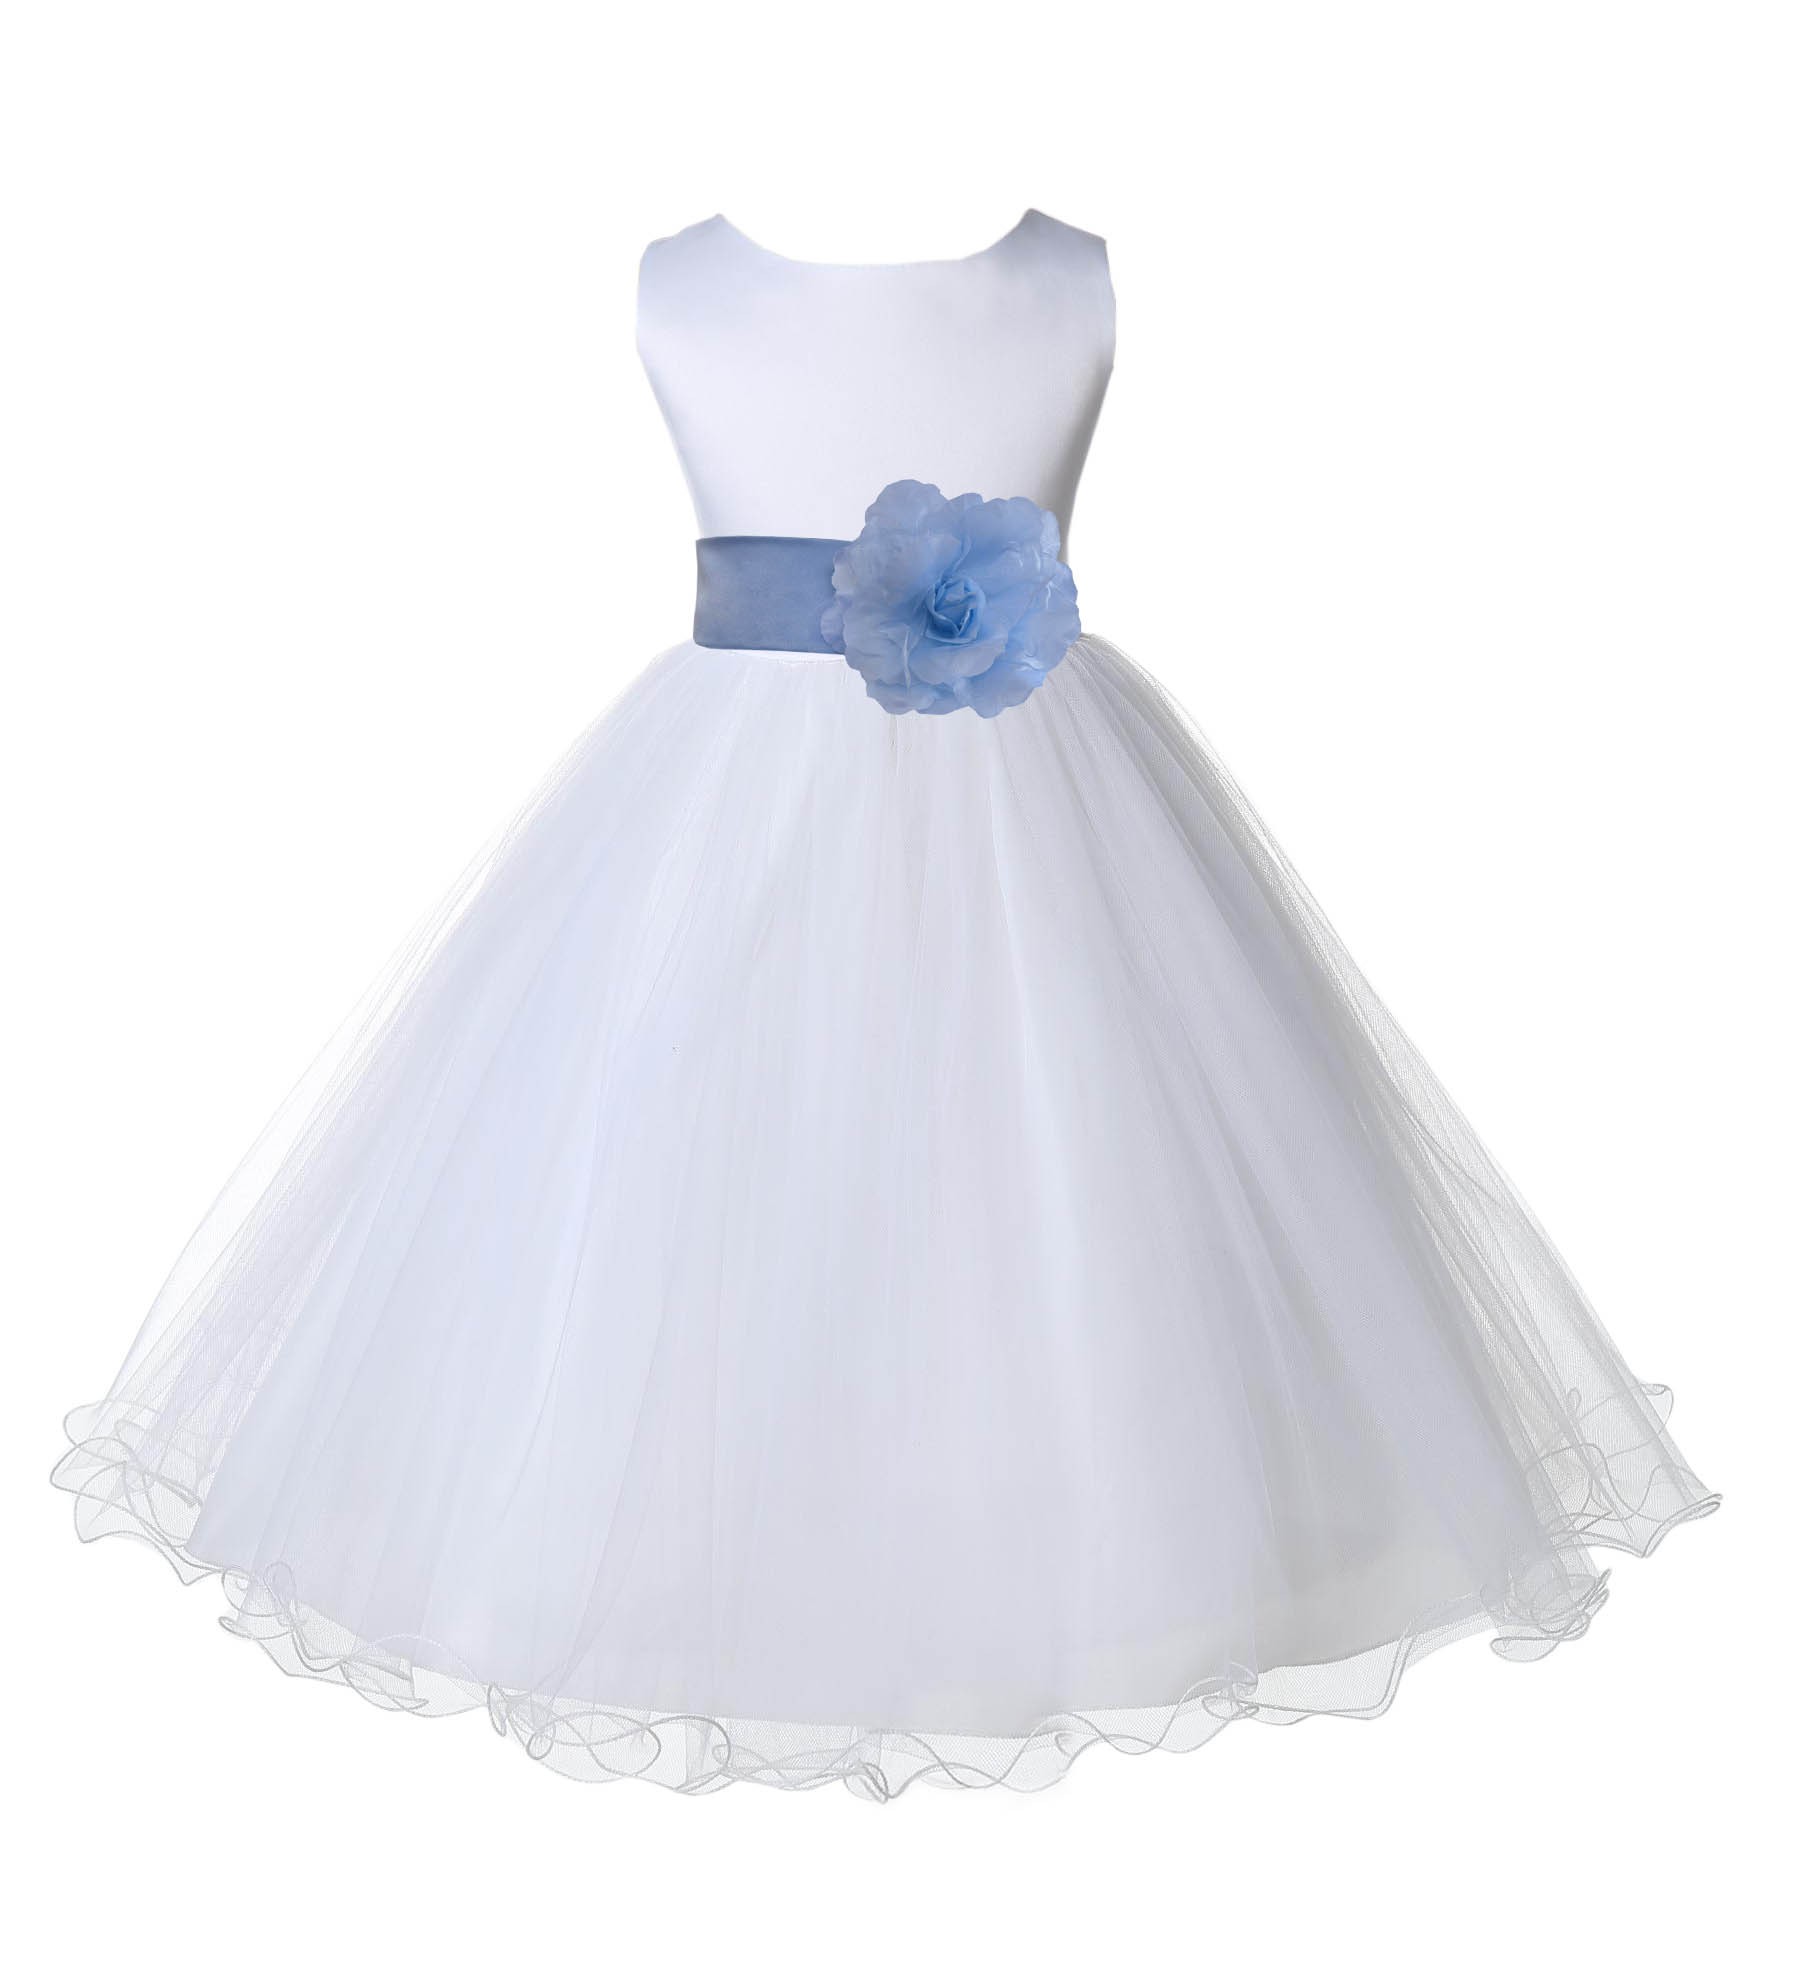 White/Sky Tulle Rattail Edge Flower Girl Dress Wedding Bridal 829S